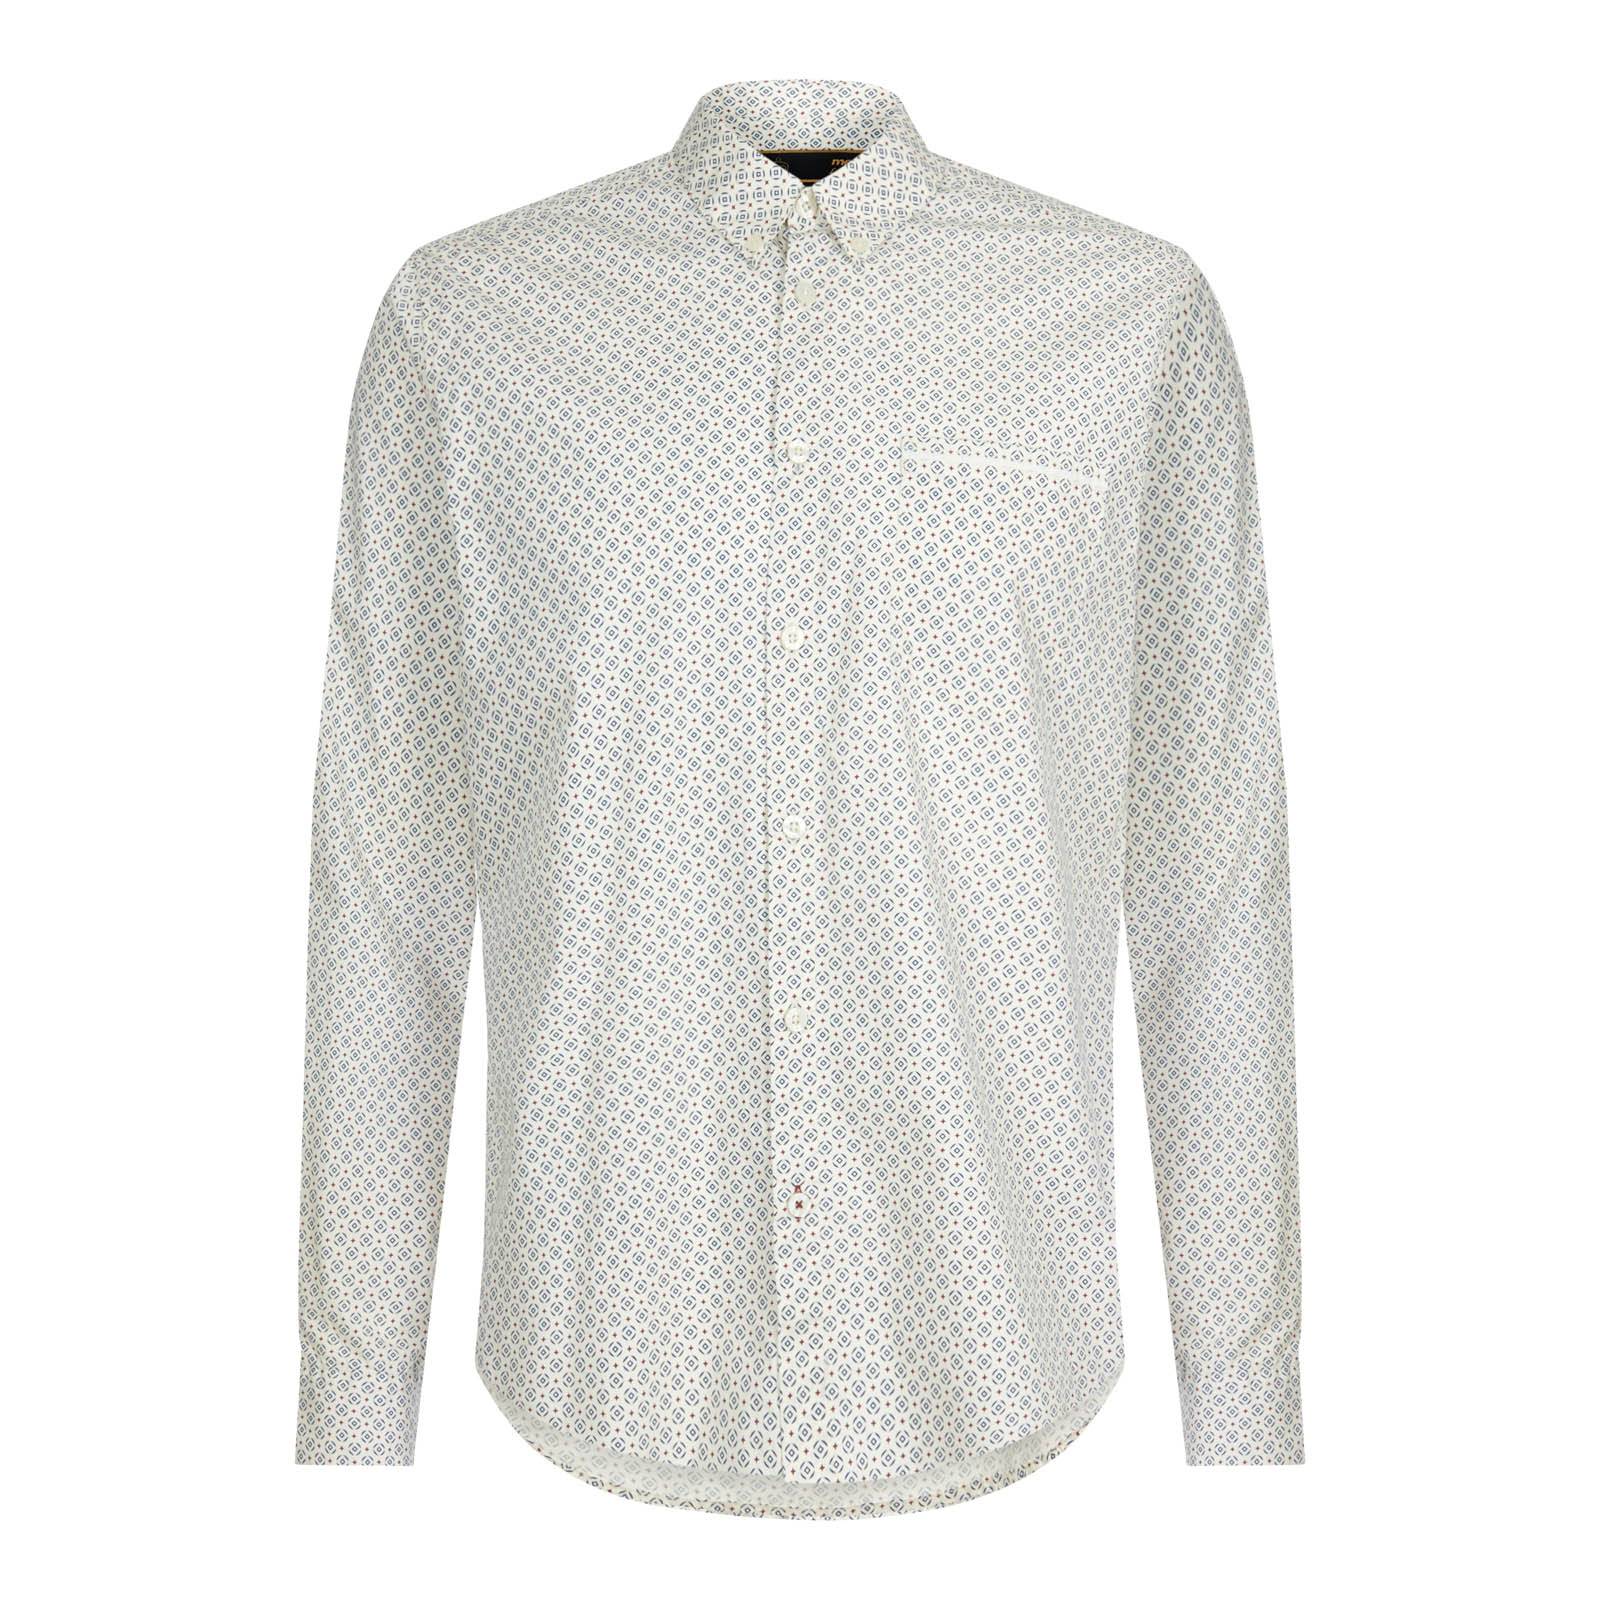 Купить рубашку кнопки. Рубашка Merc London. Винтажная белая рубашка мужская. Мужская рубашка белого цвета.